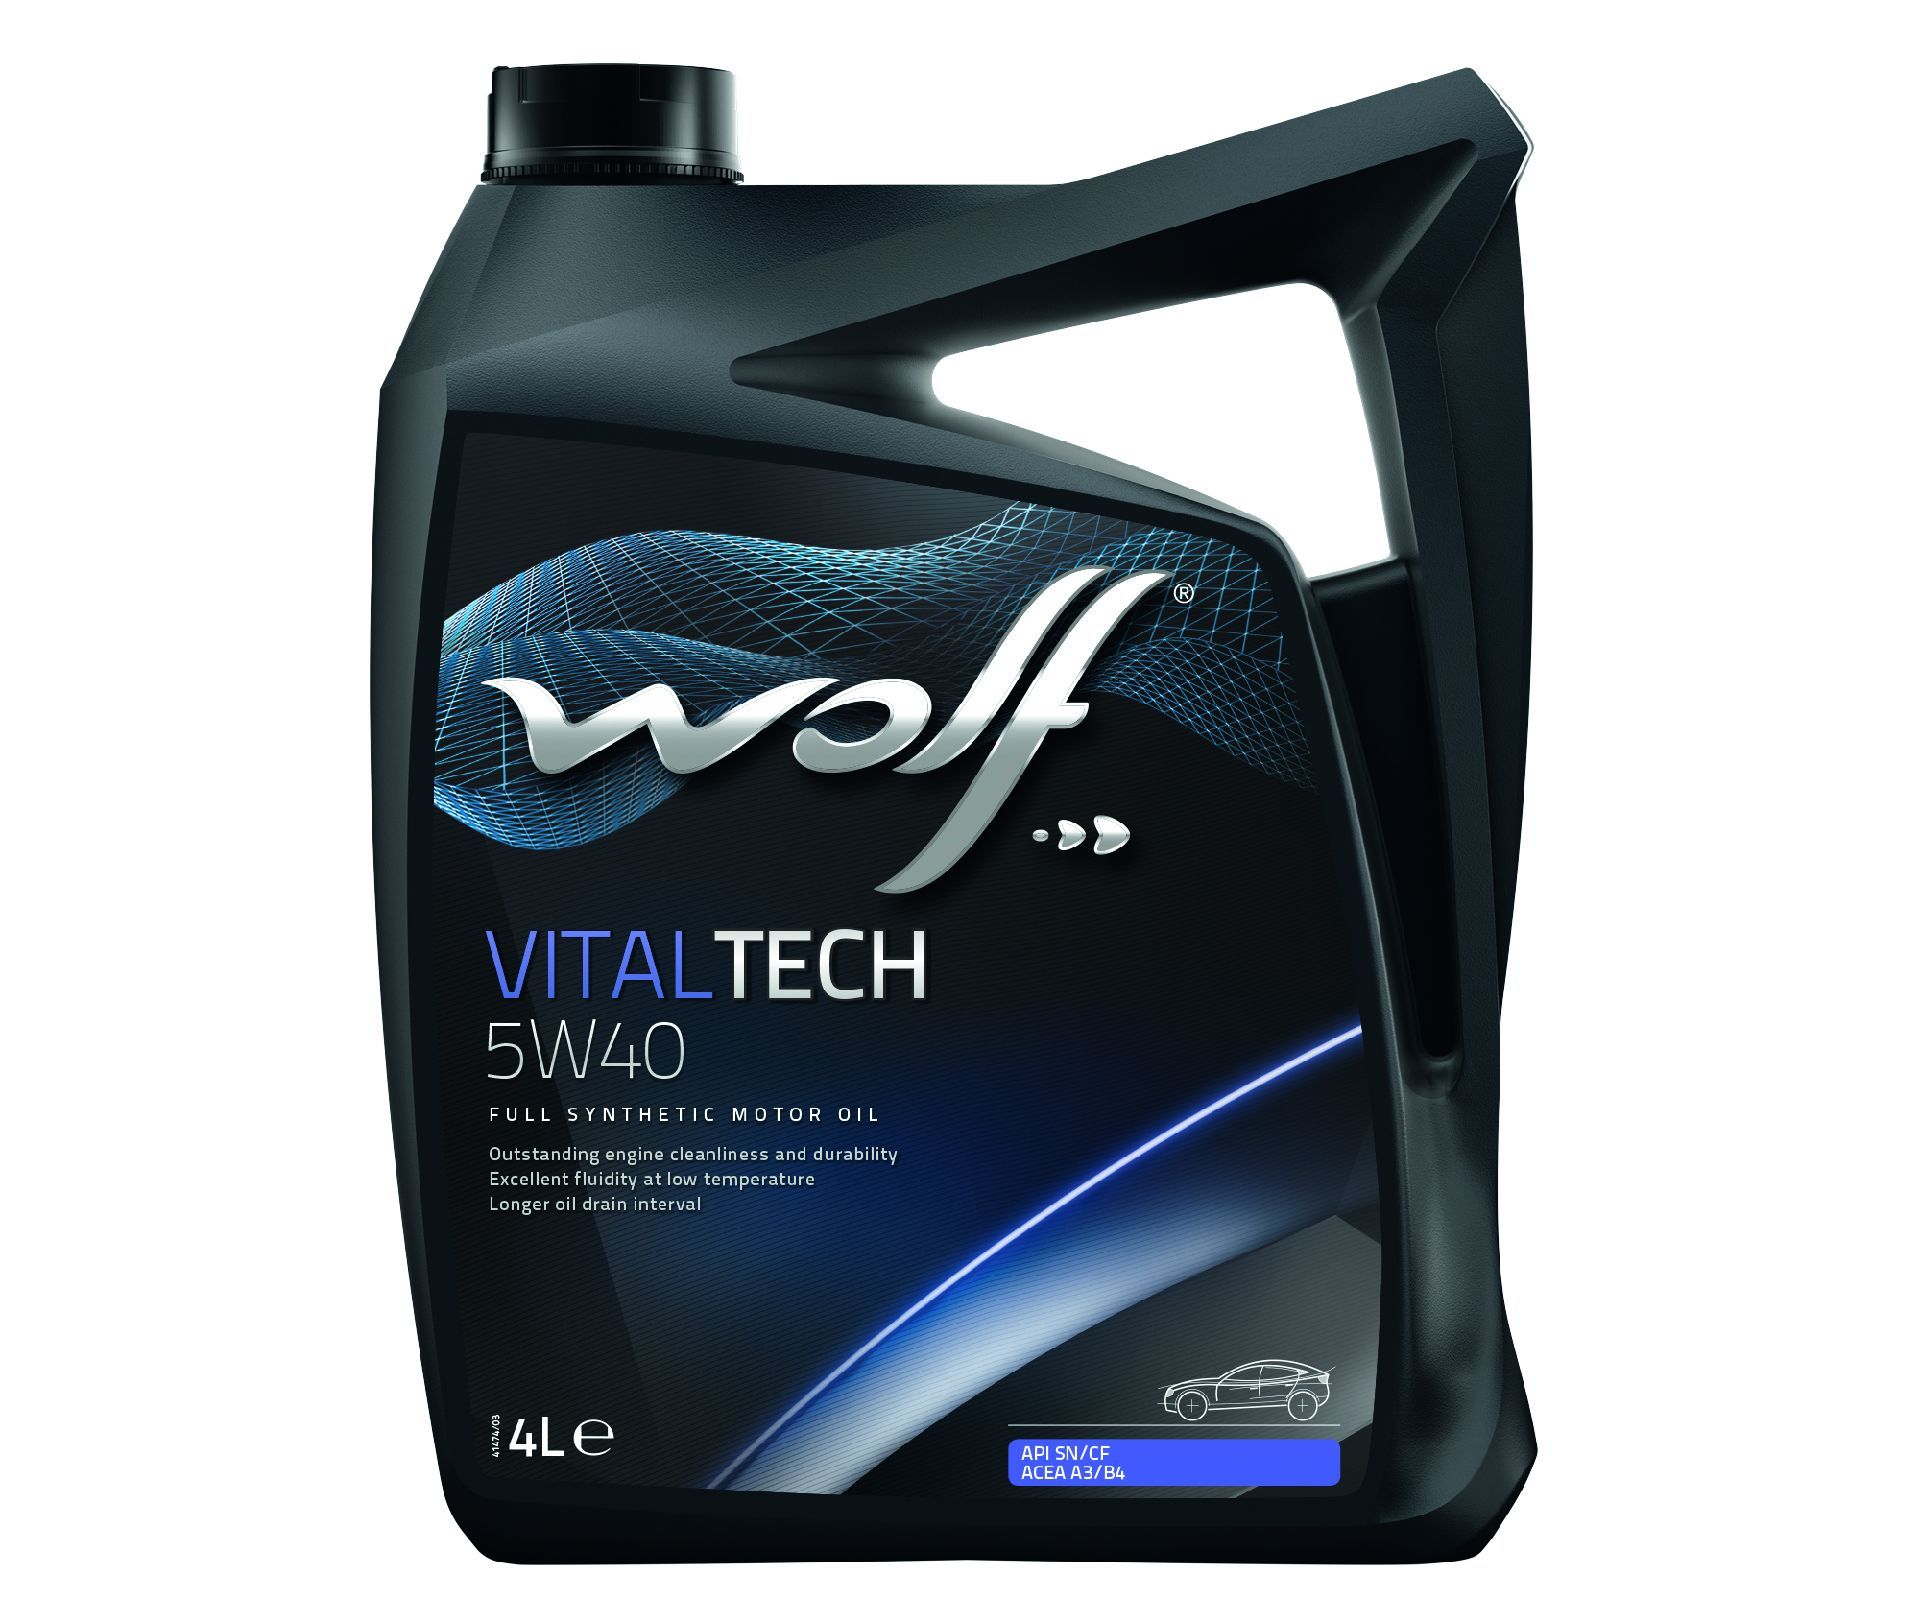 Wolf vital tech 5w40